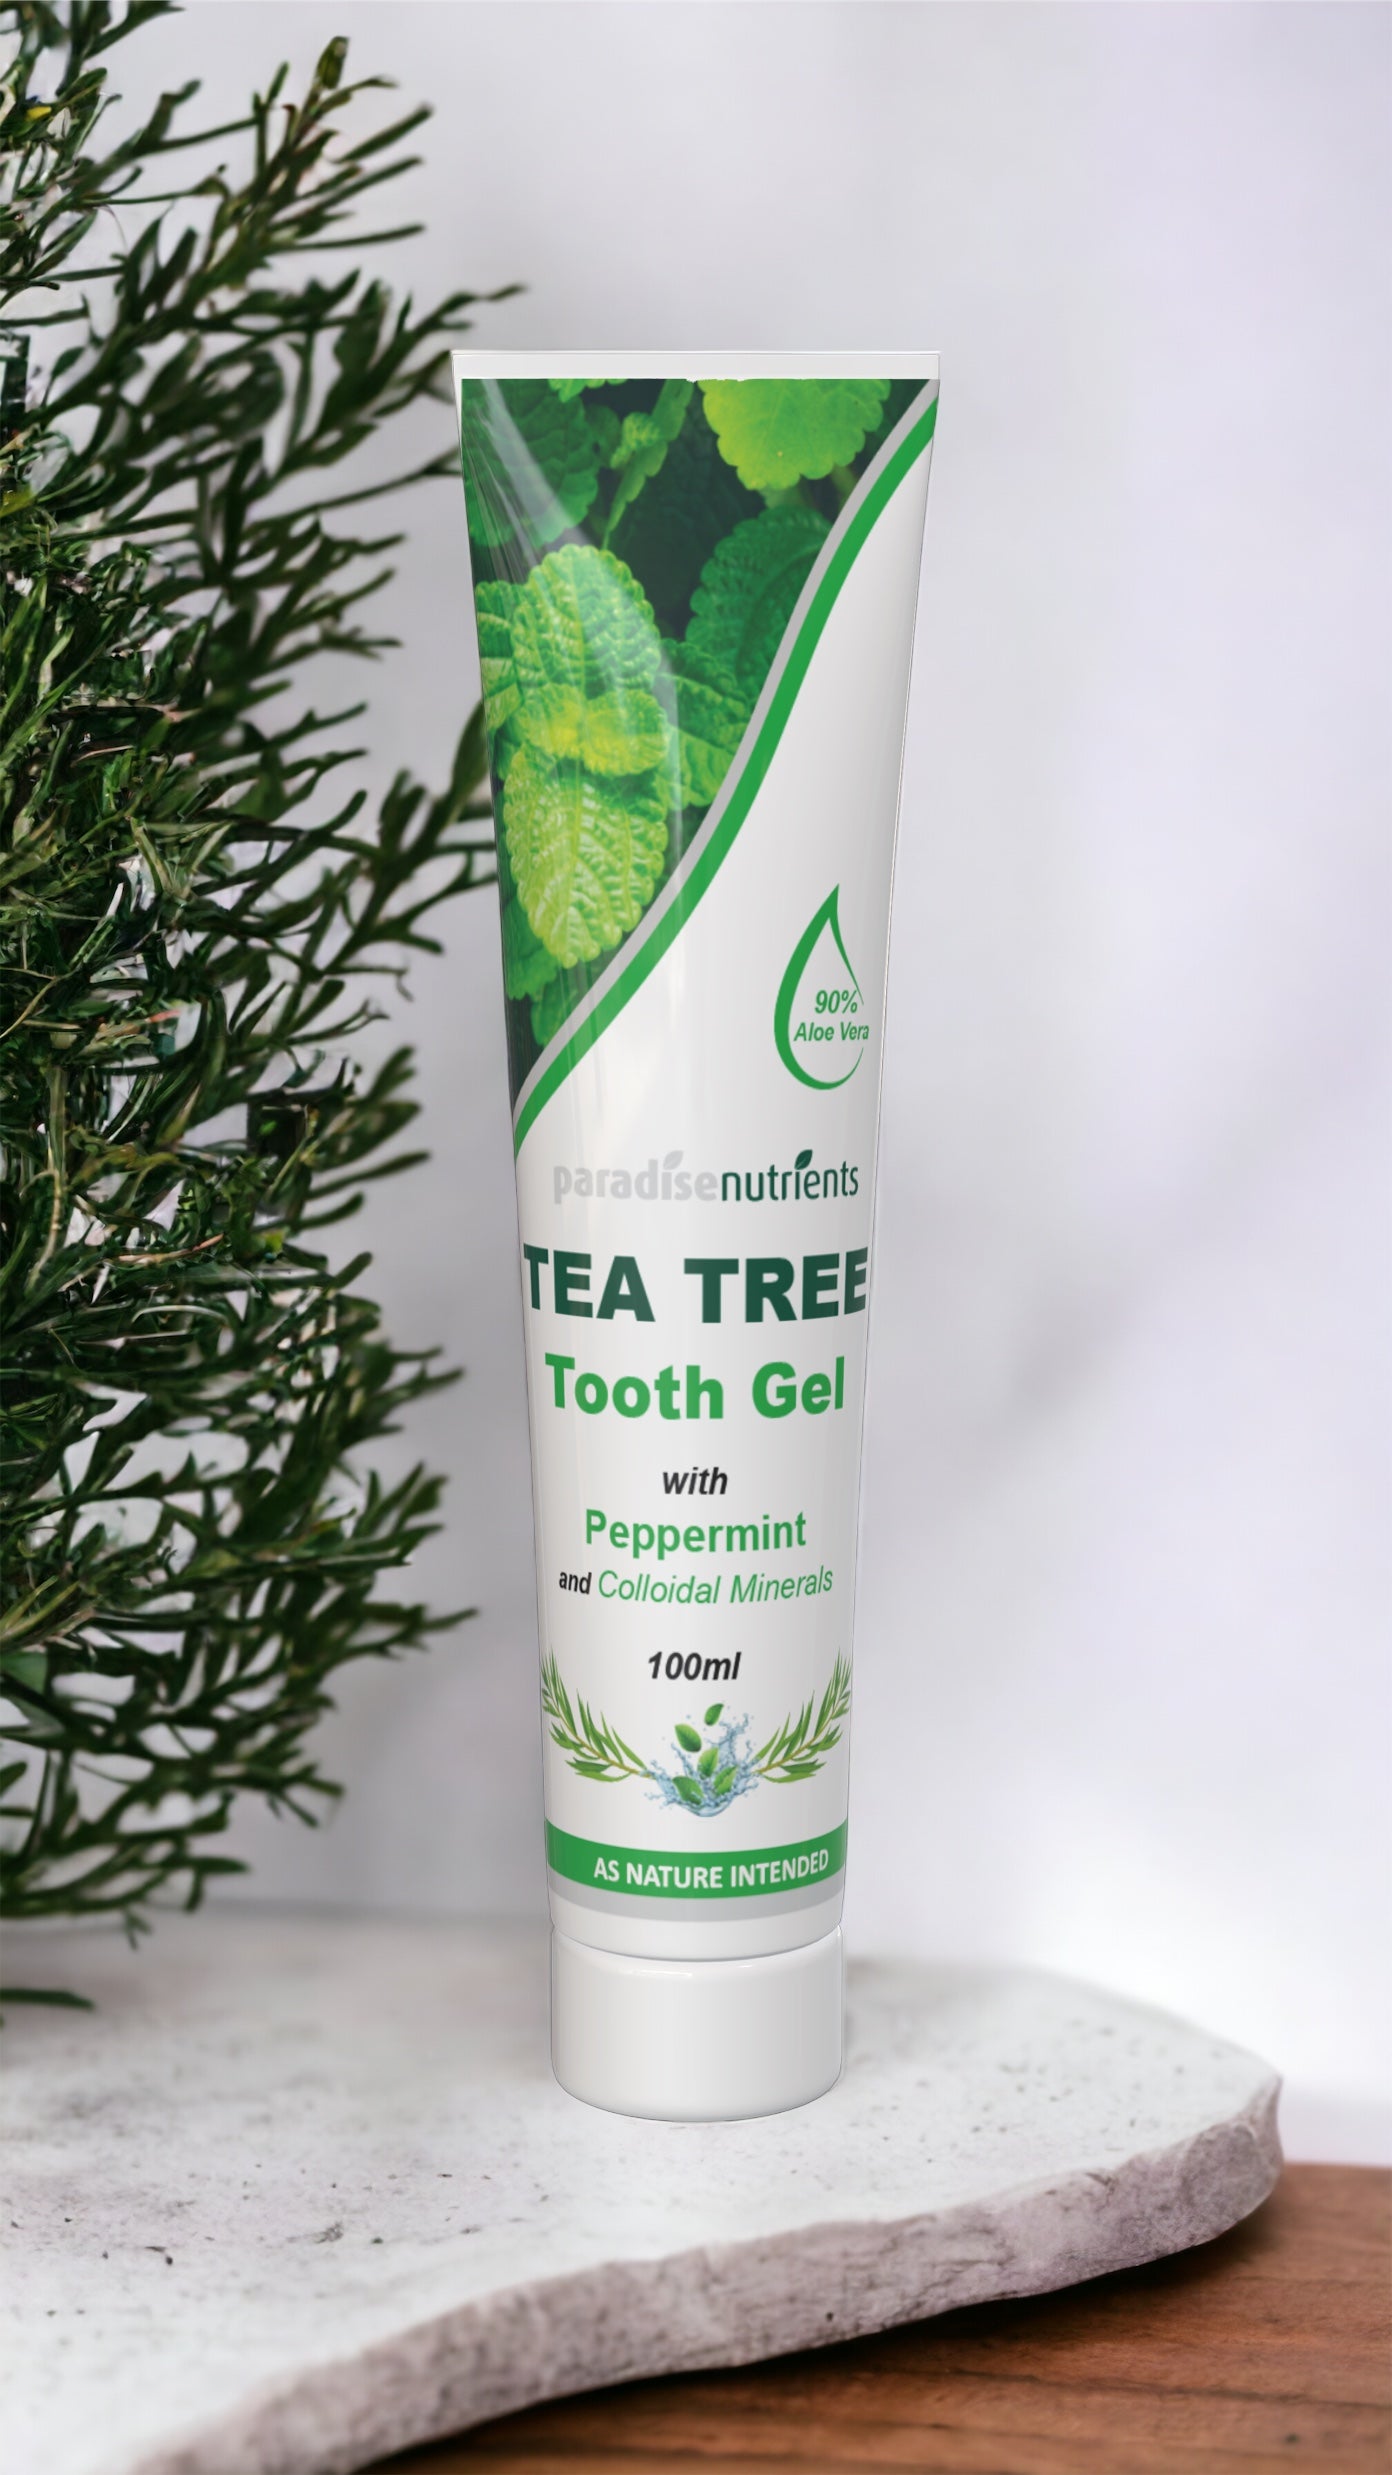 Tea Tree Tooth Gel